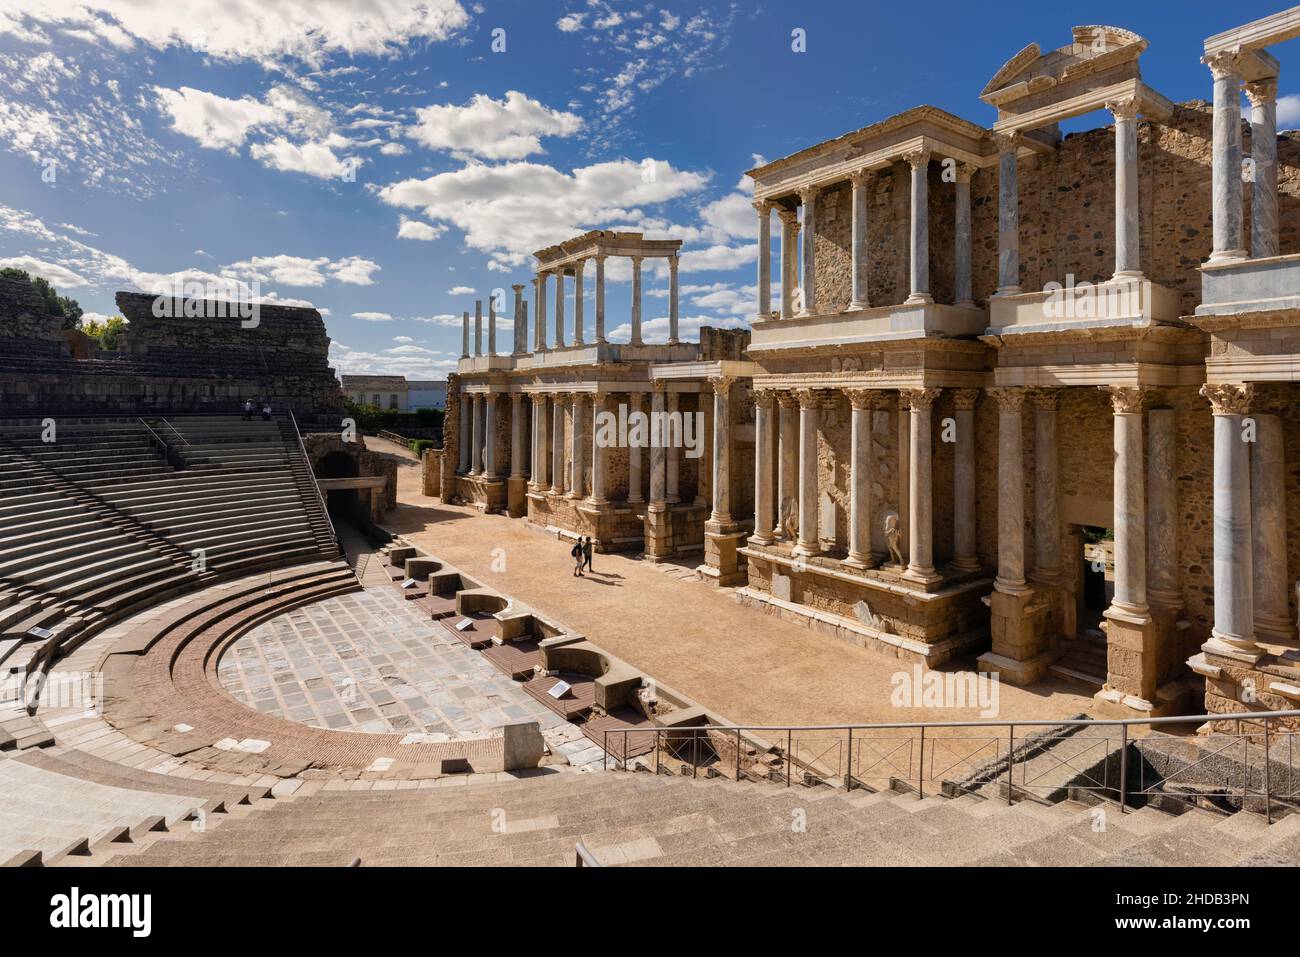 Théâtre romain, Merida, province de Badajoz, Estrémadure, Espagne.Le théâtre a été construit à l'origine dans les années 16 à 15 av. J.-C.L'Ensem archéologique Banque D'Images